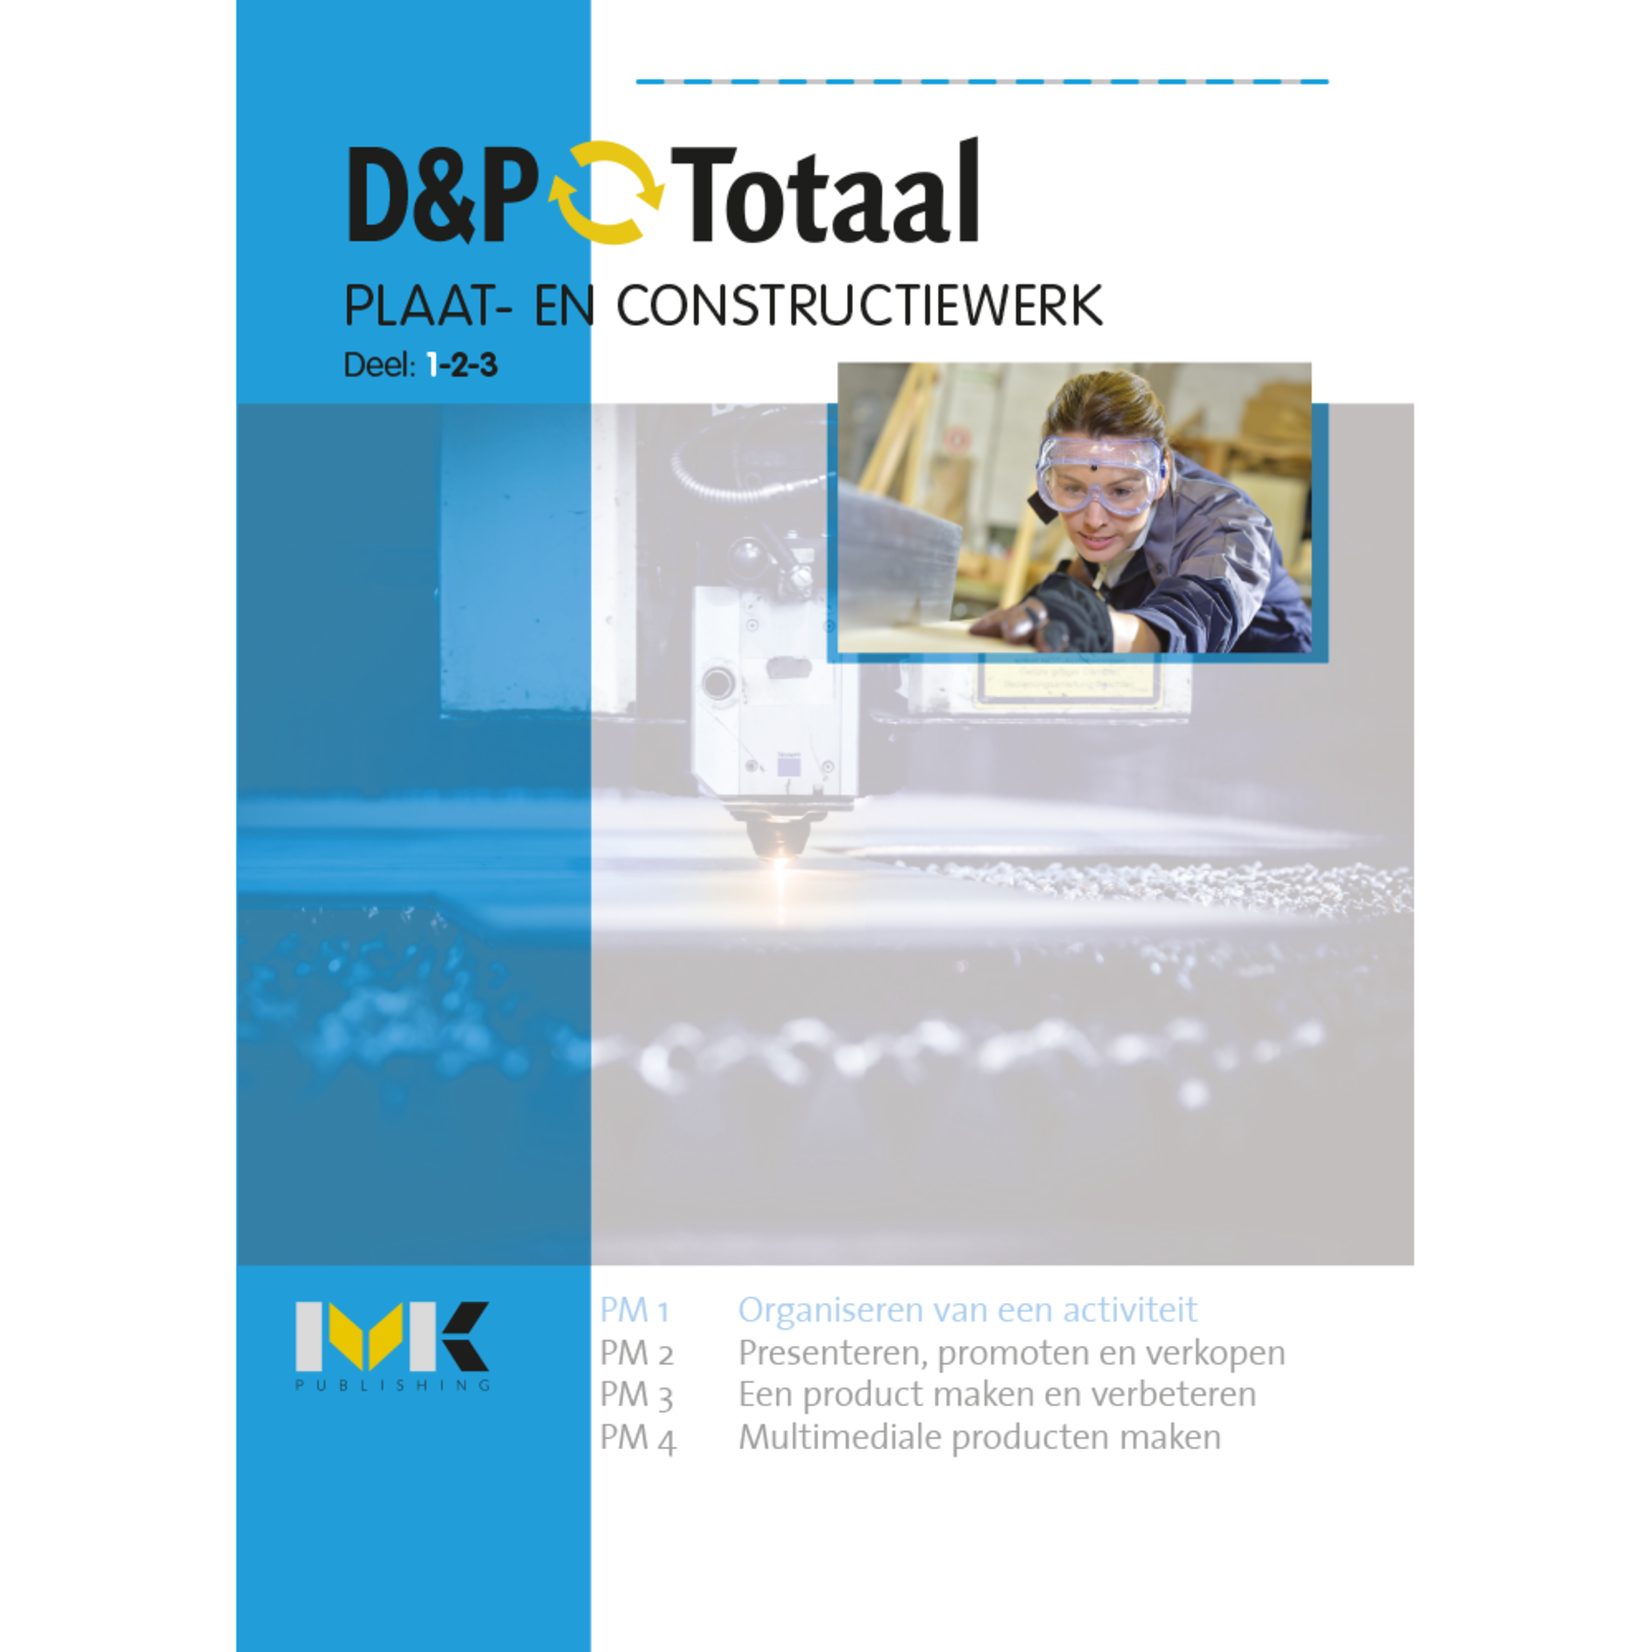 D&P-Totaal - PIE Plaat- en constructiewerk (PM1/1305)